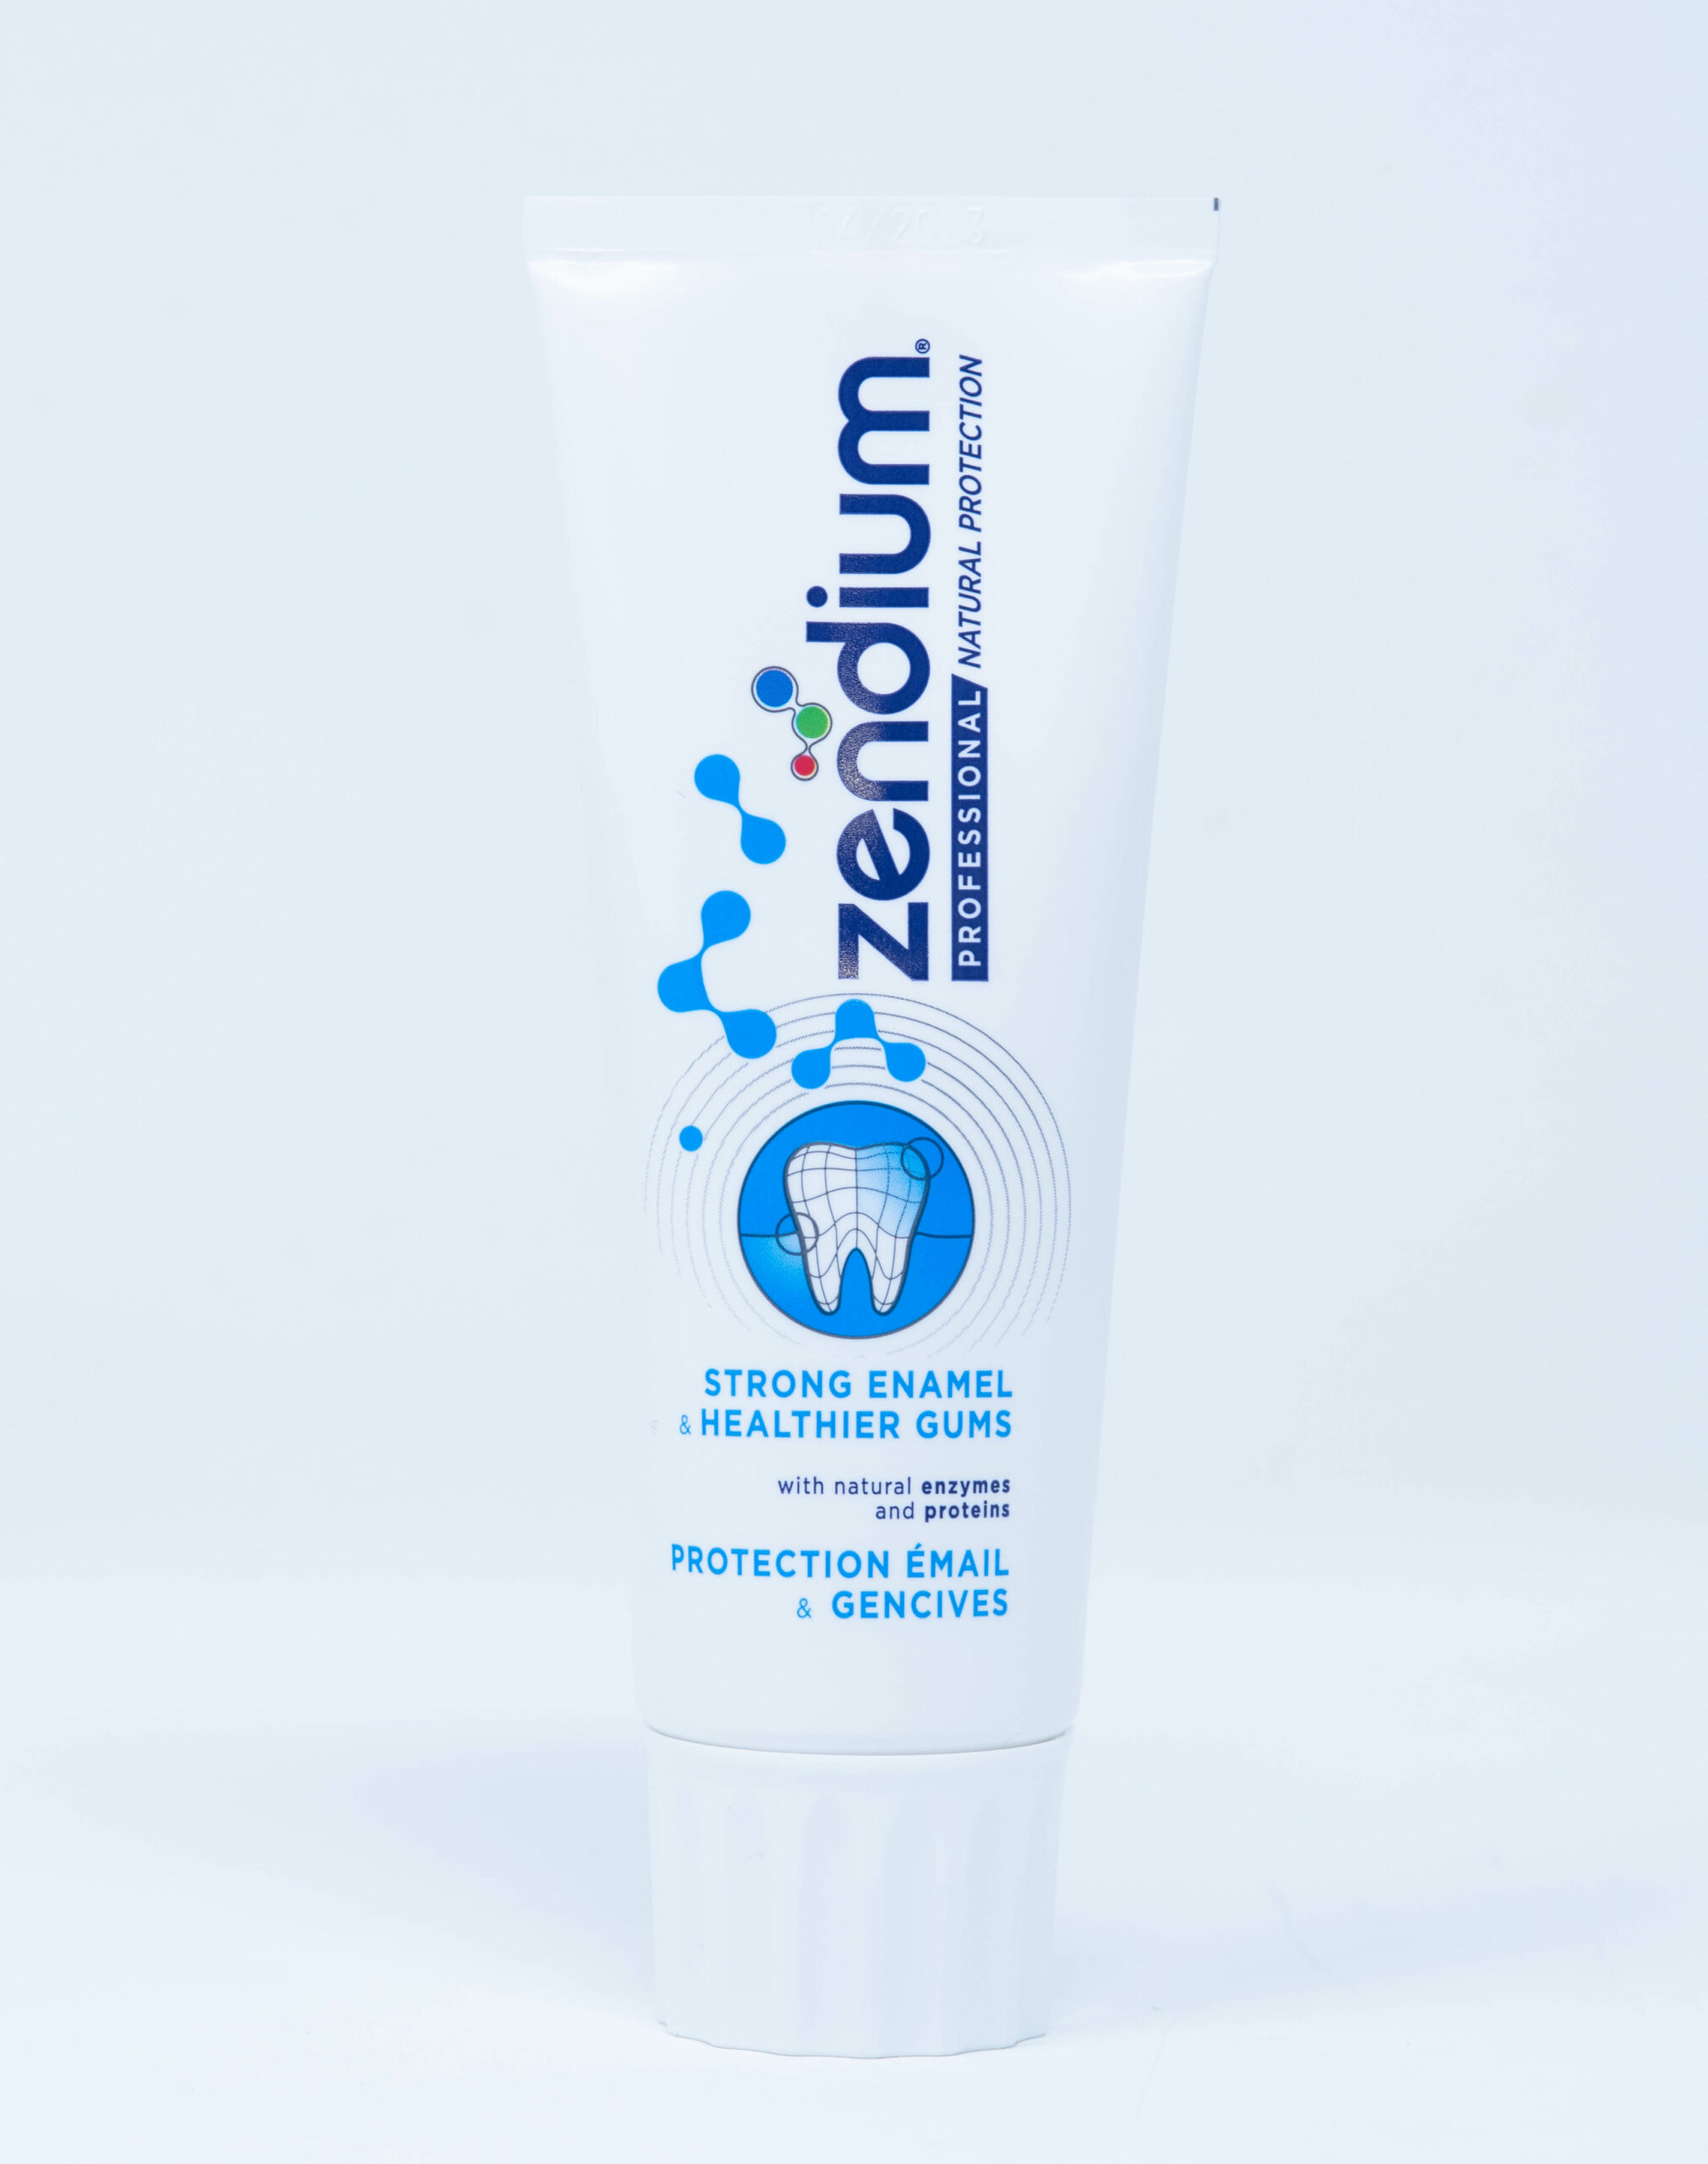 Zendium Professional Dentifricio Smalto Forte e Gengive più Sane - 75 ml